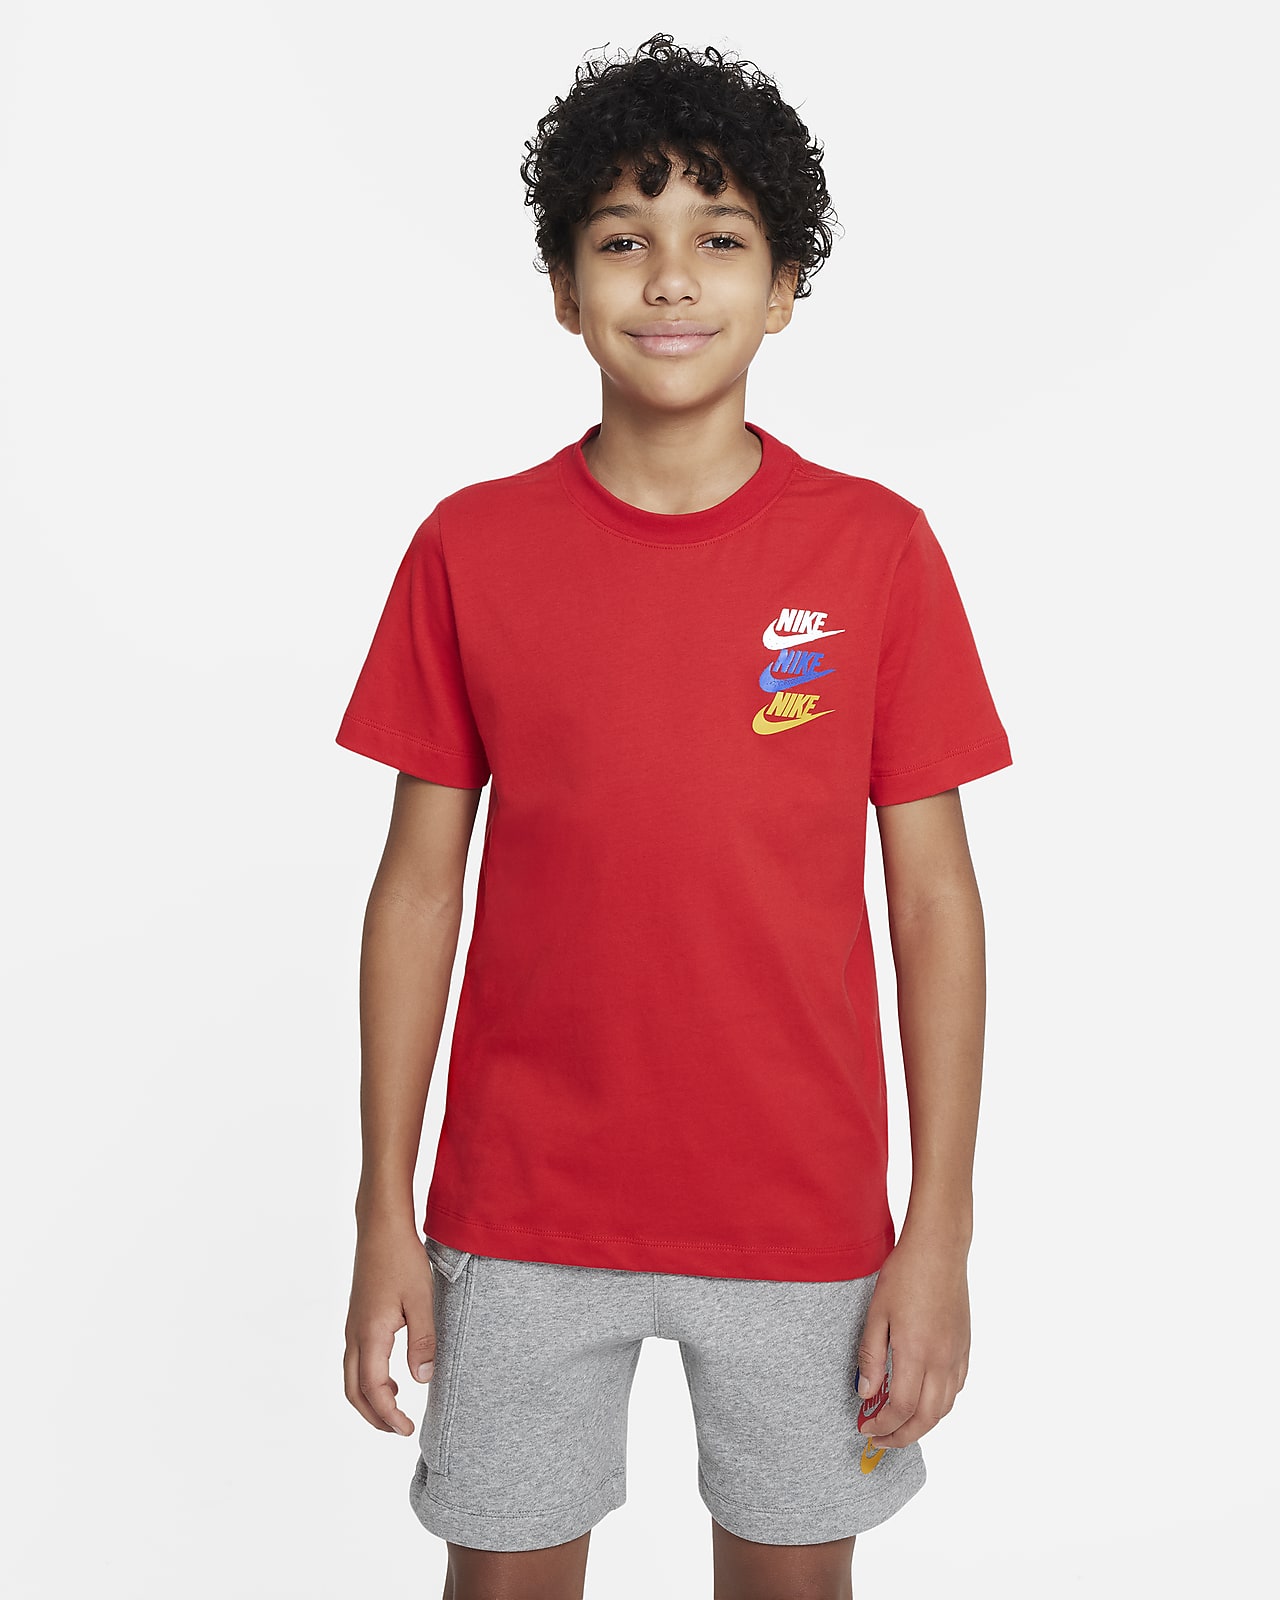 Tričko Nike Sportswear Standard Issue pro větší děti (chlapce)